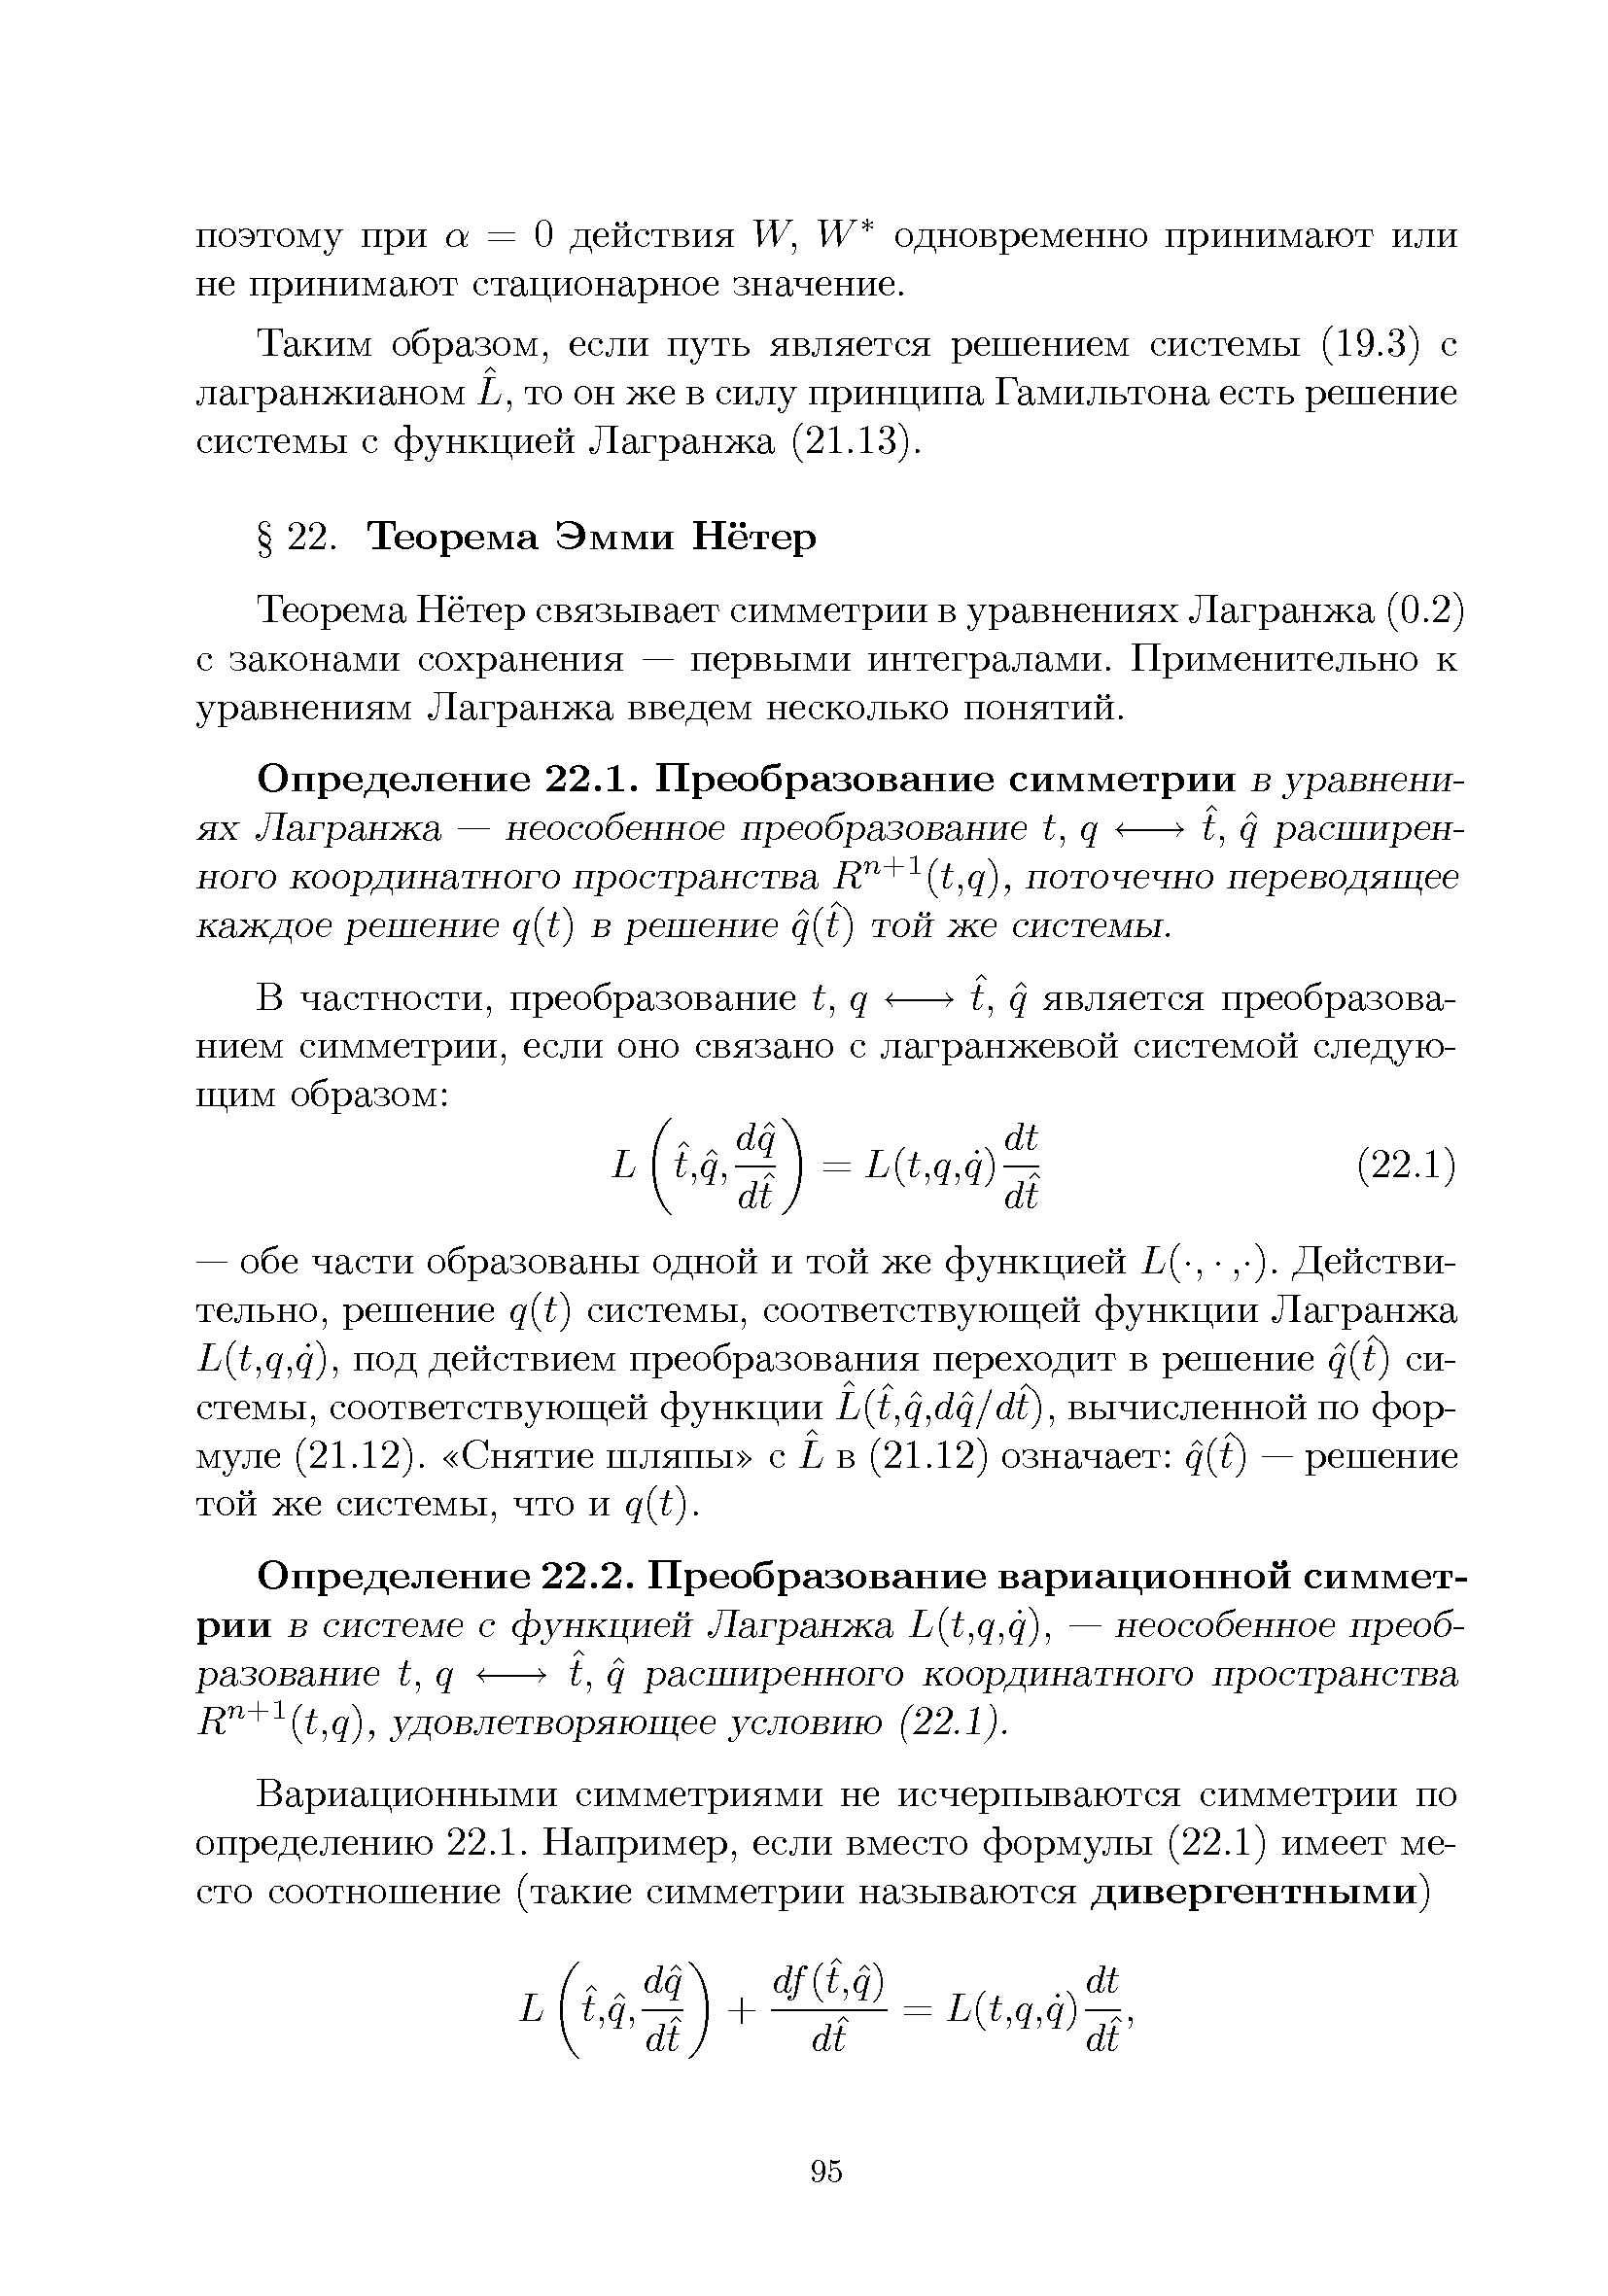 Теорема Нётер связывает симметрии в уравнениях Лагранжа (0.2) с законами сохранения — первыми интегралами. Применительно к уравнениям Лагранжа введем несколько понятий.
